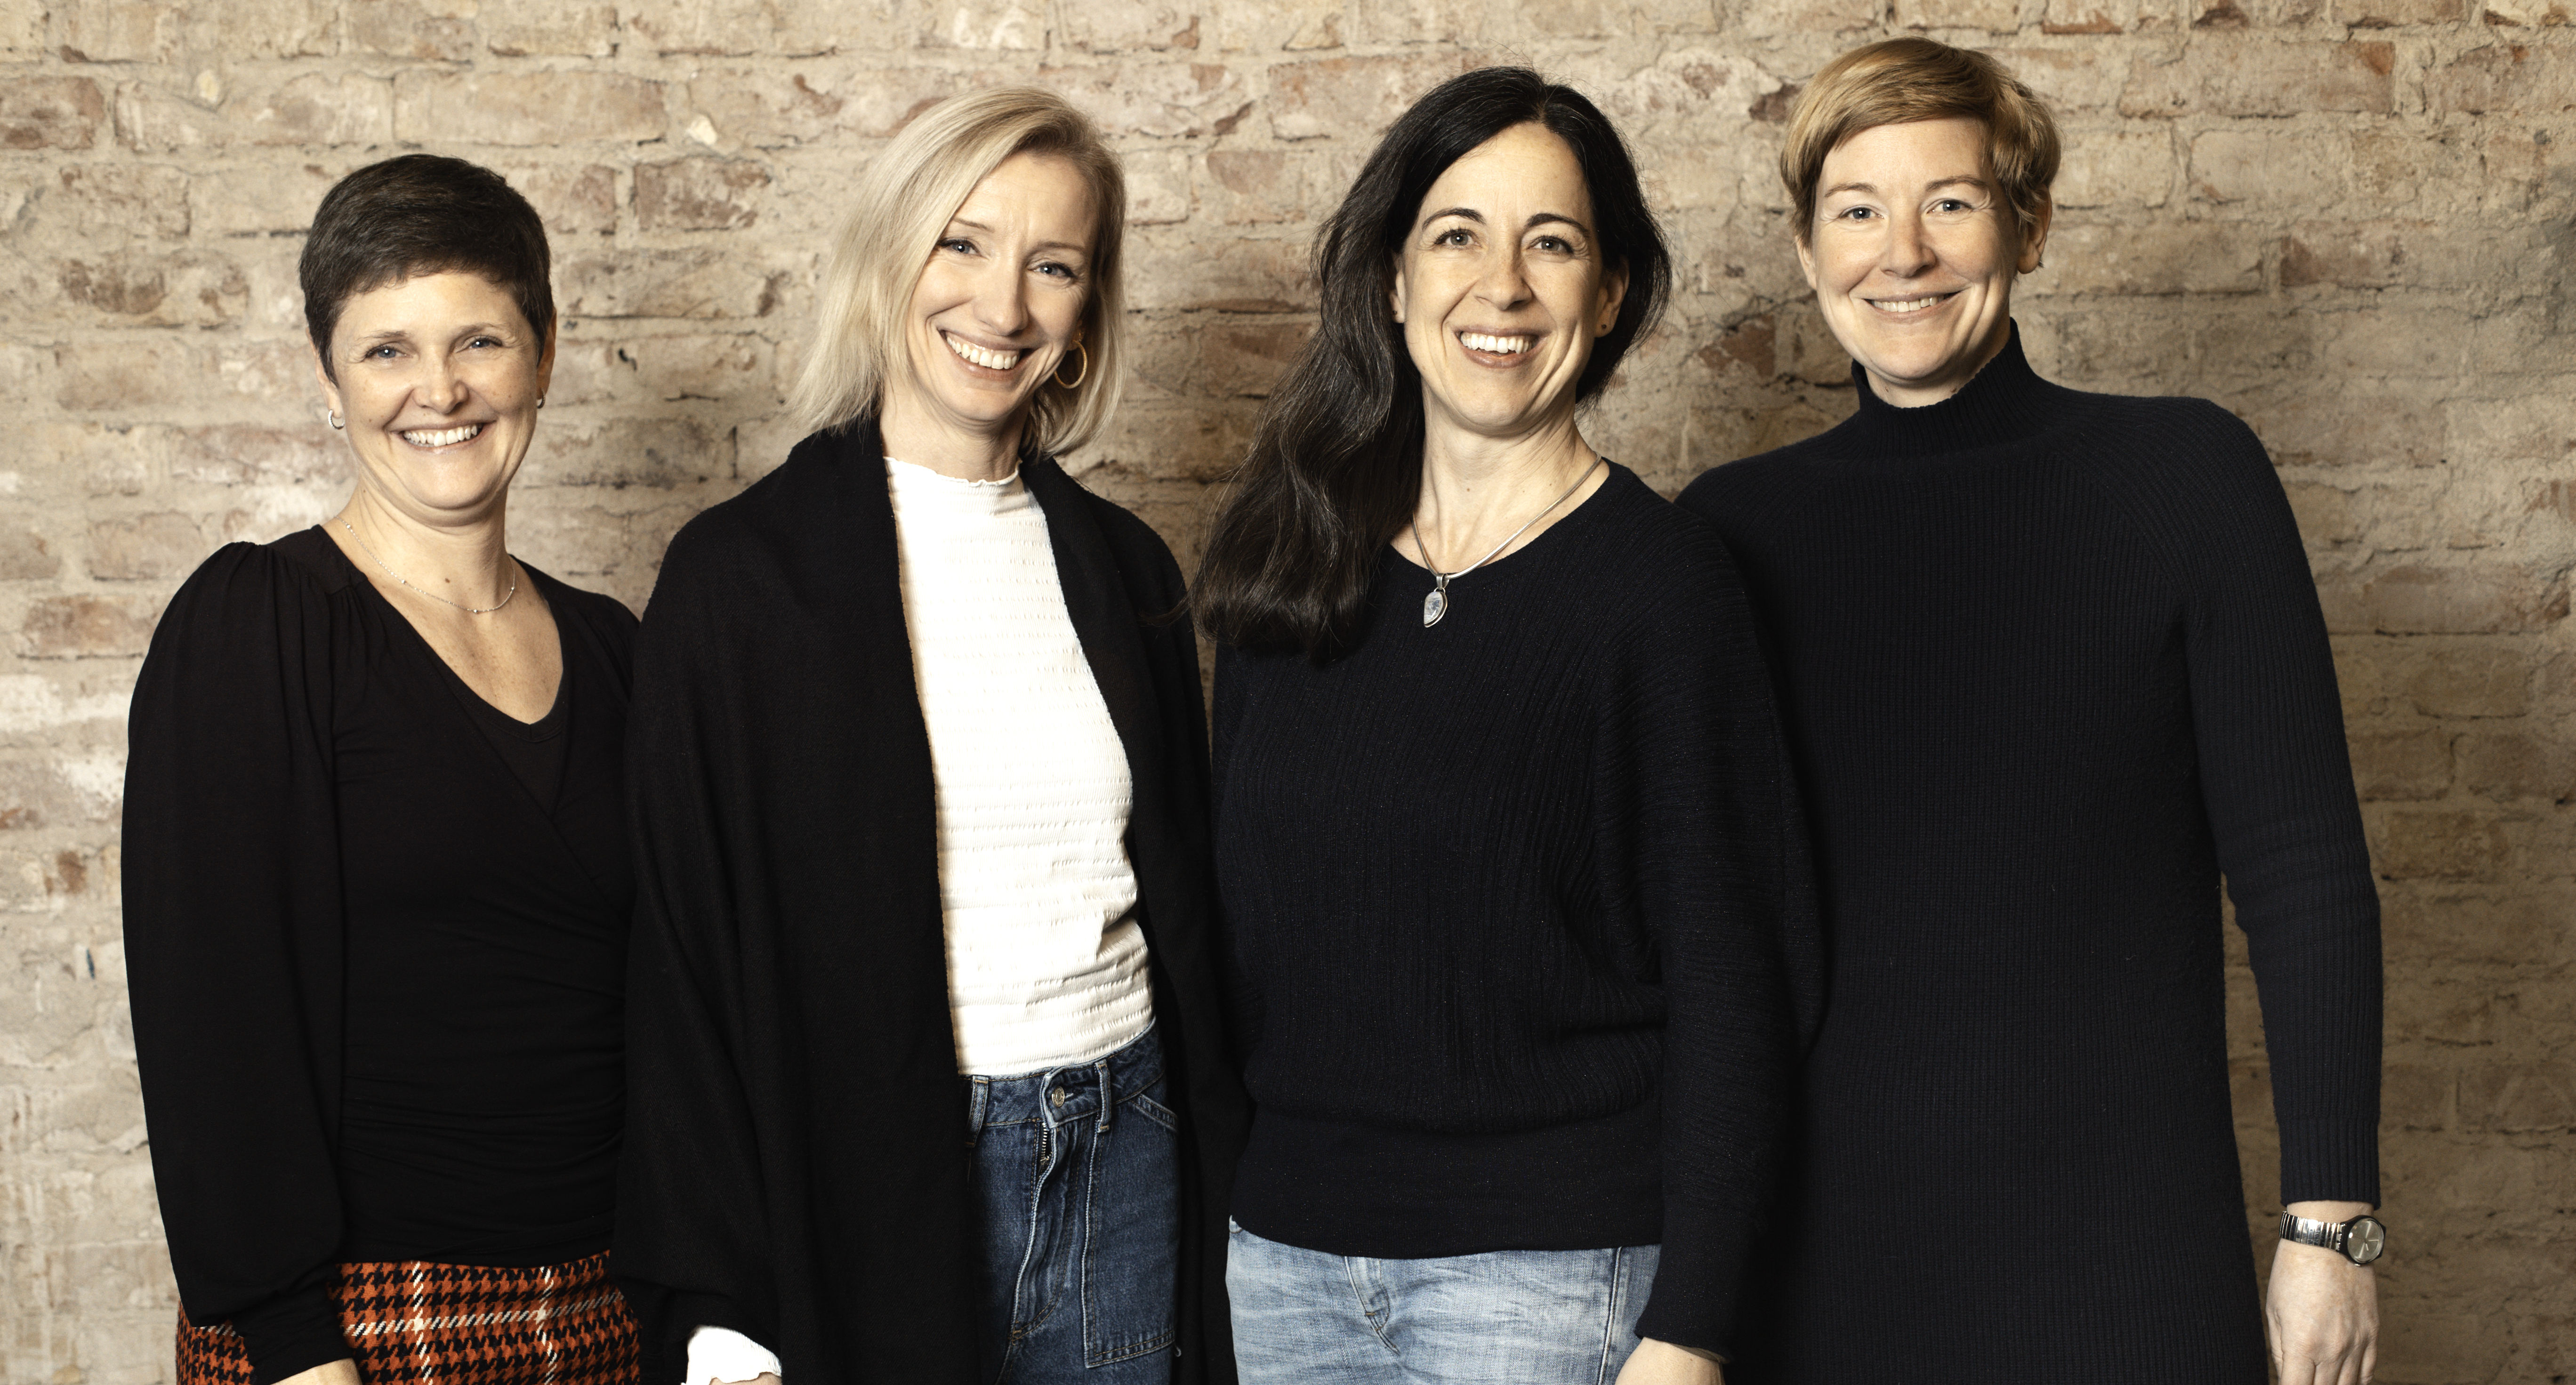 Das Team von d-interp: Sabine Kreuzpaintner, Martina Theimer, Sara Campos Arnoldi und Vivi Bentin